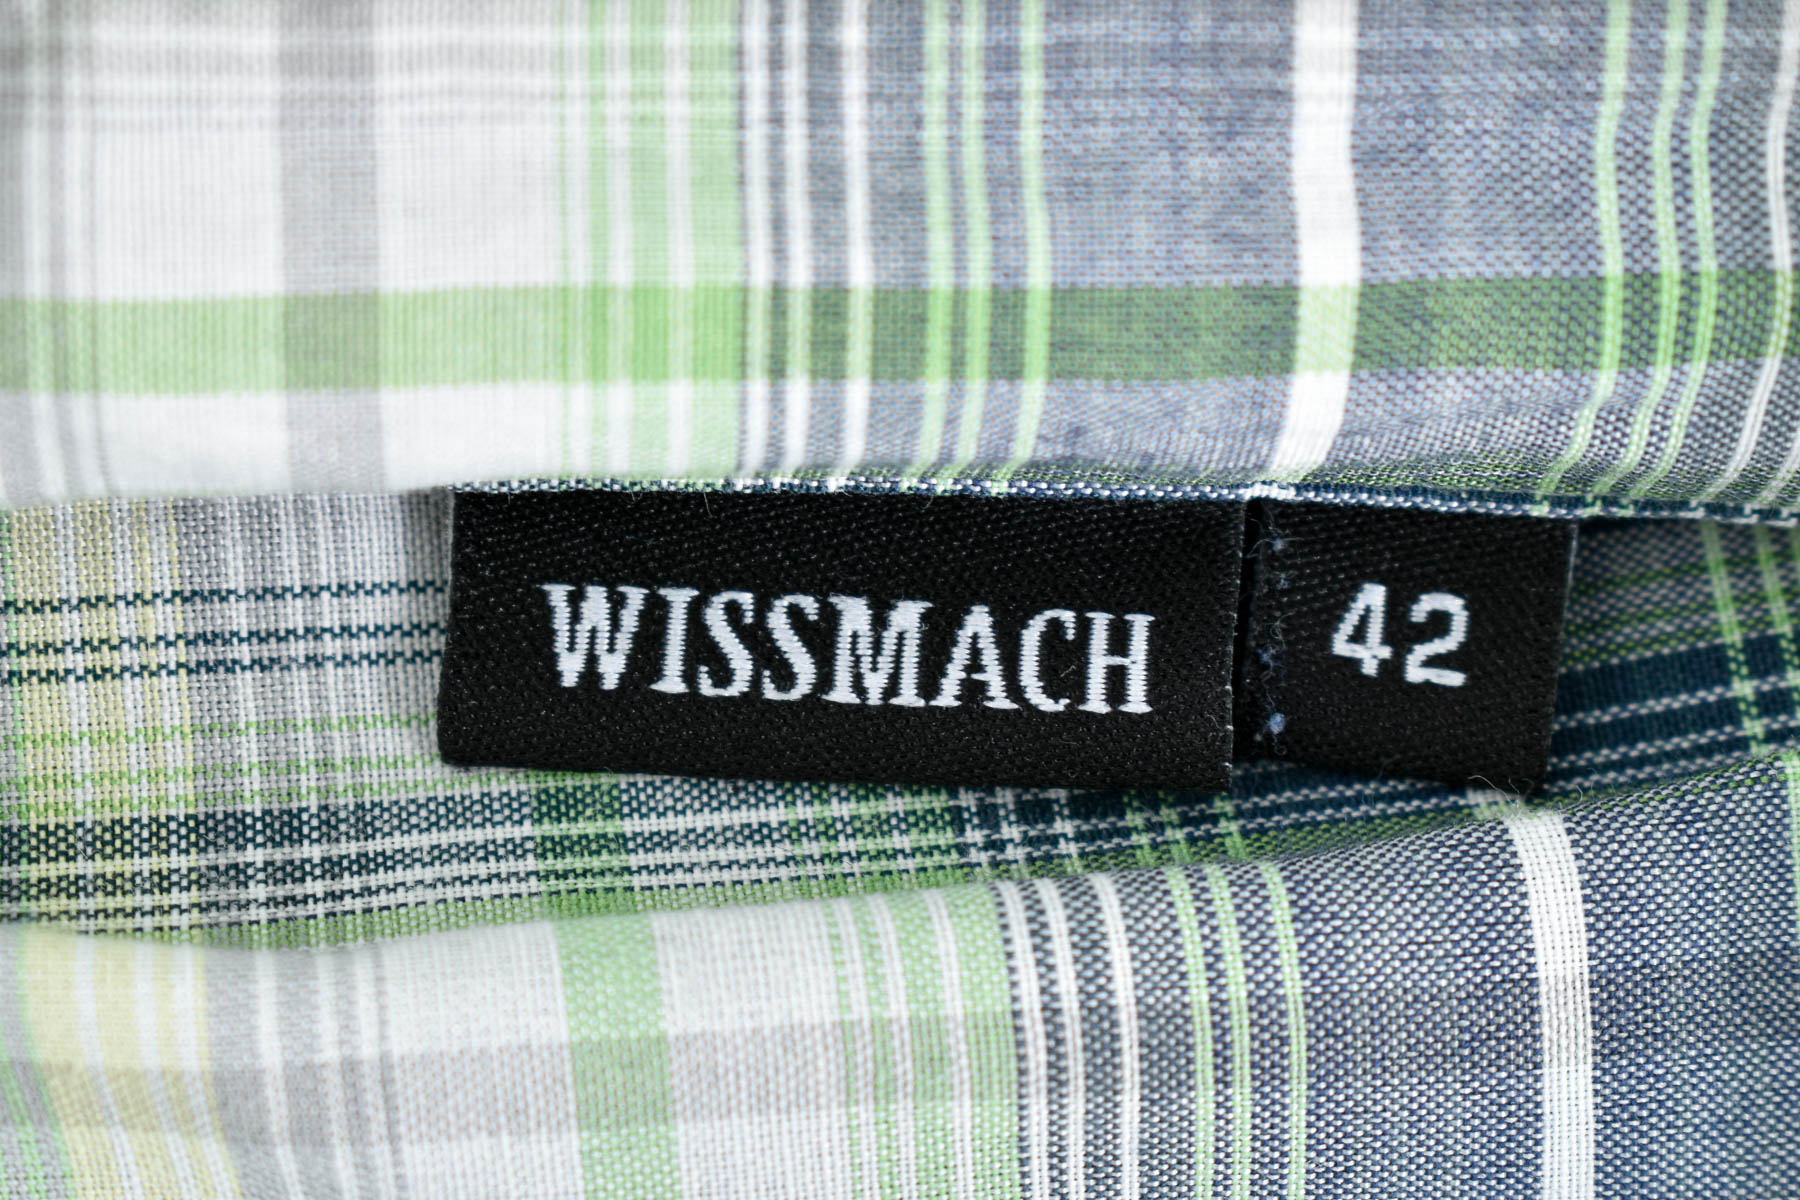 Γυναικείо πουκάμισο - Wissmach - 2